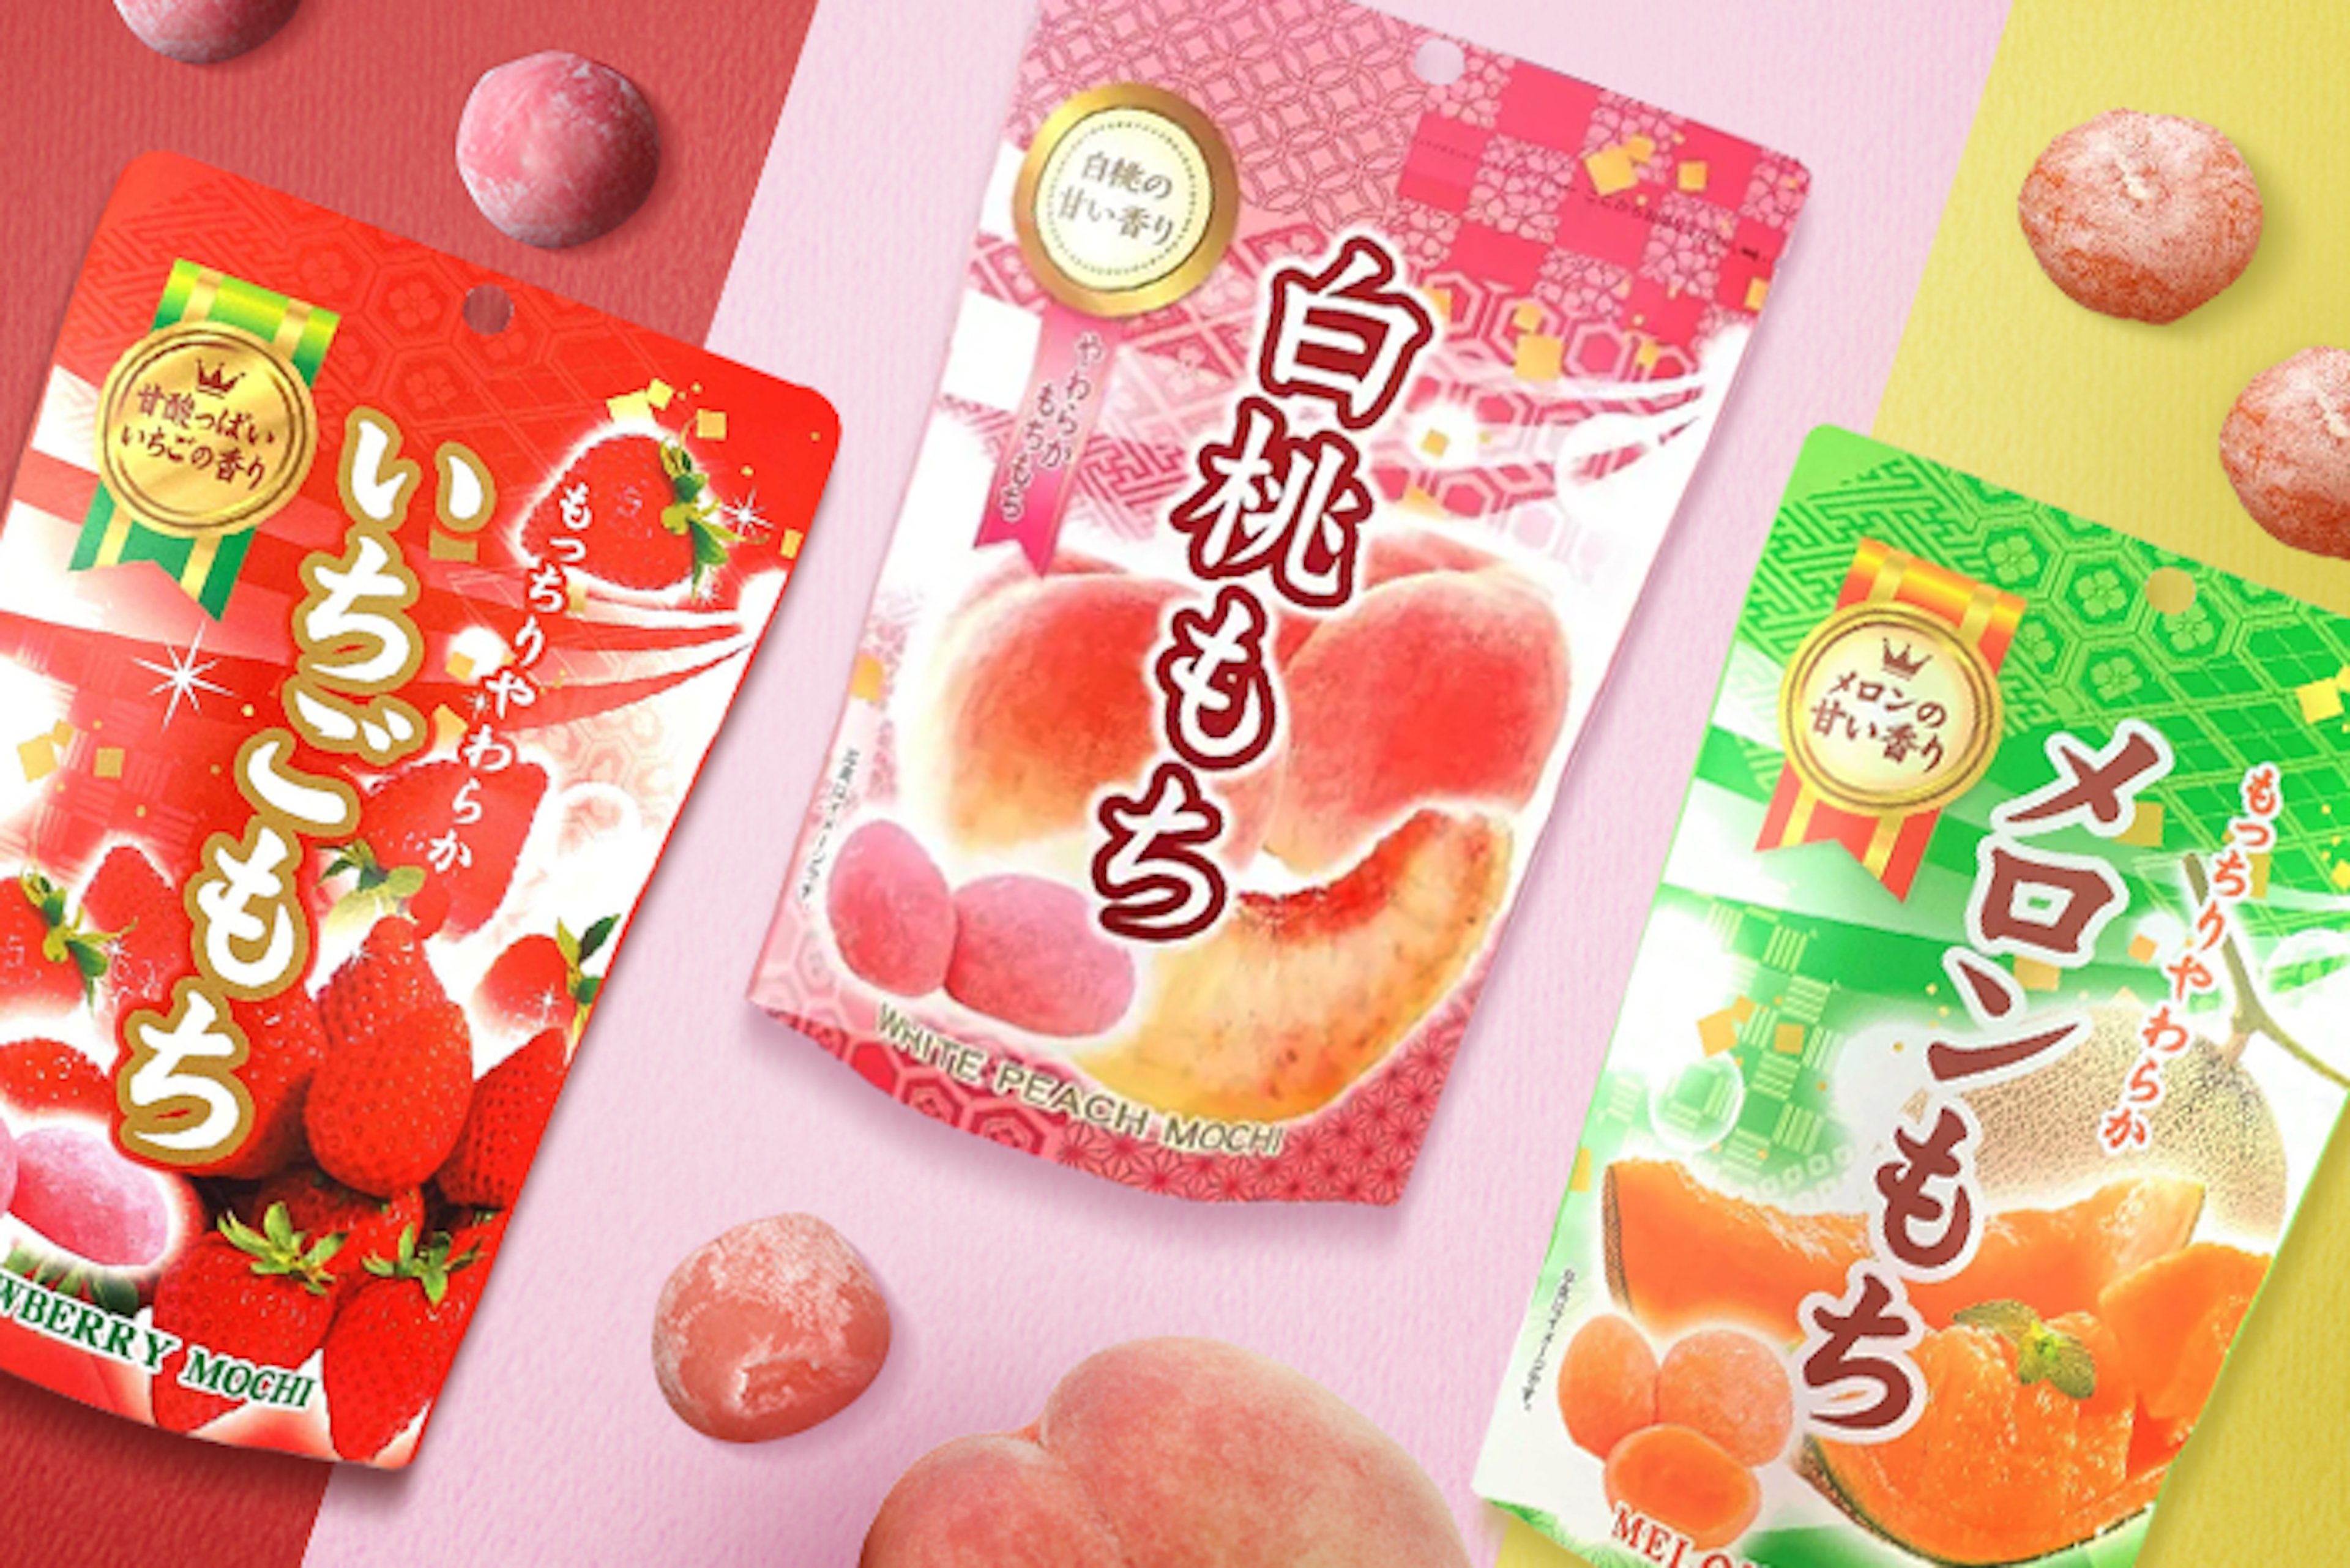 Nahaufnahme eines geöffneten Seiki Mochi Erdbeere: Ein einzelner Erdbeer Mochi, der halbiert ist, um die weiche, fruchtige Füllung zu zeigen.